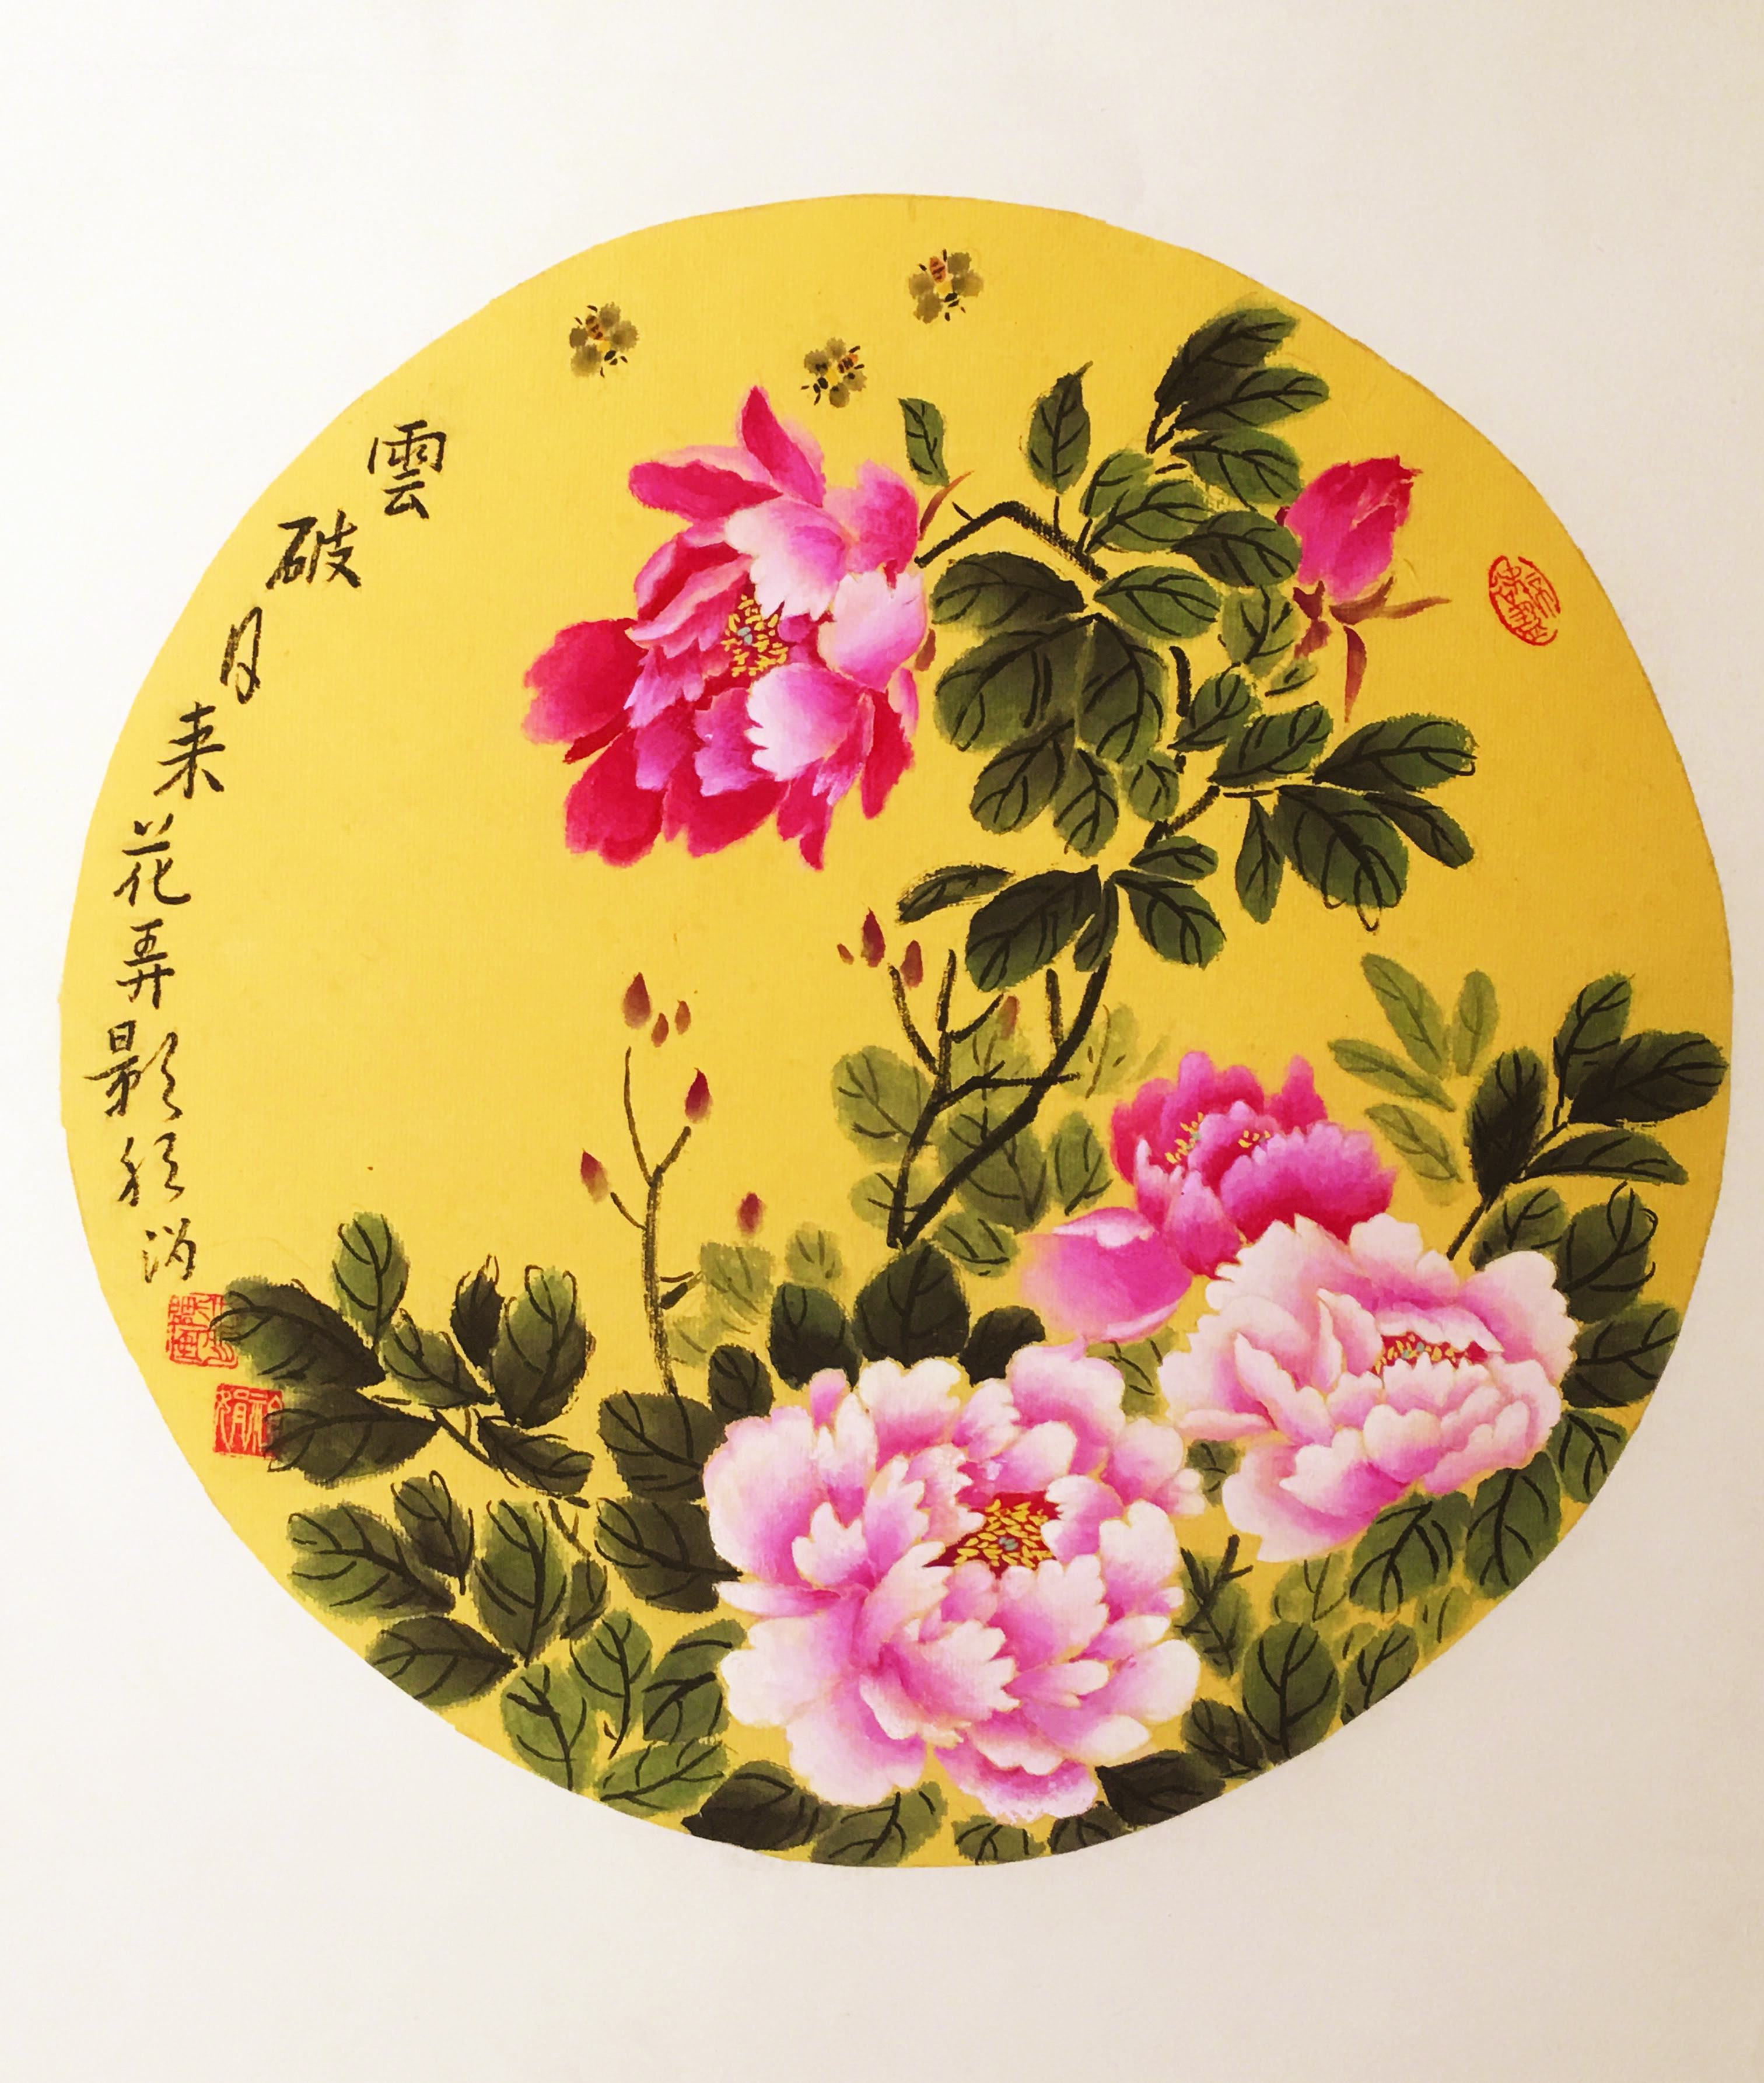 陈祖娟诗画专栏——趣写花、茶、诗、画 一七令 《画》